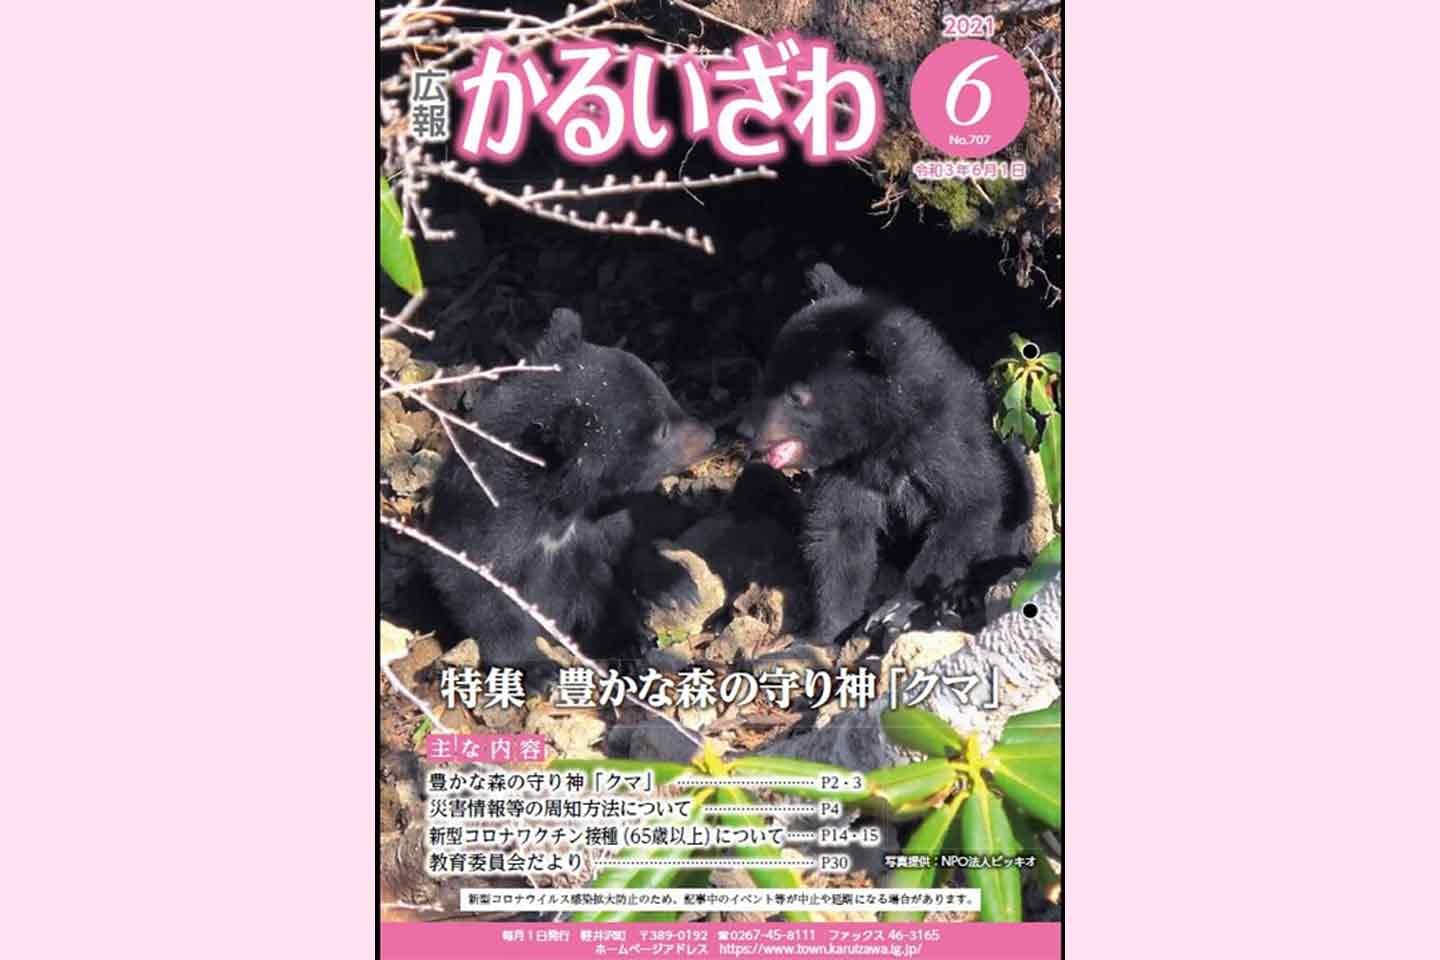 軽井沢町広報誌『かるいざわ』の表紙にツキノワグマの子グマの写真が採用